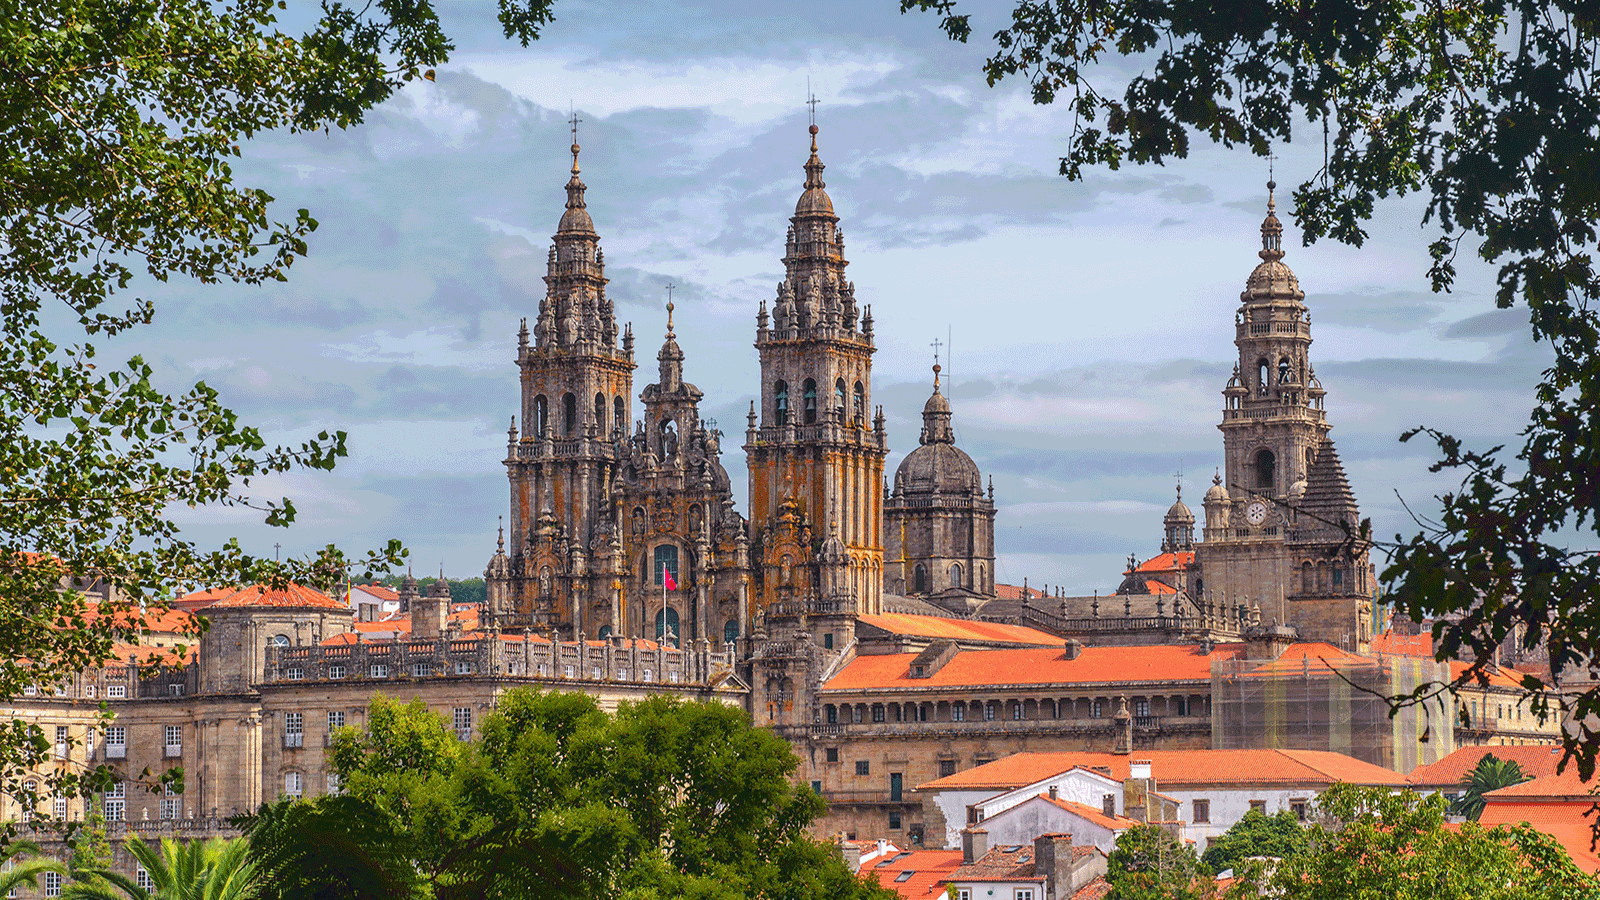 Santiago-de-Compostela聖地亞哥德孔波斯特拉主教座堂西班牙